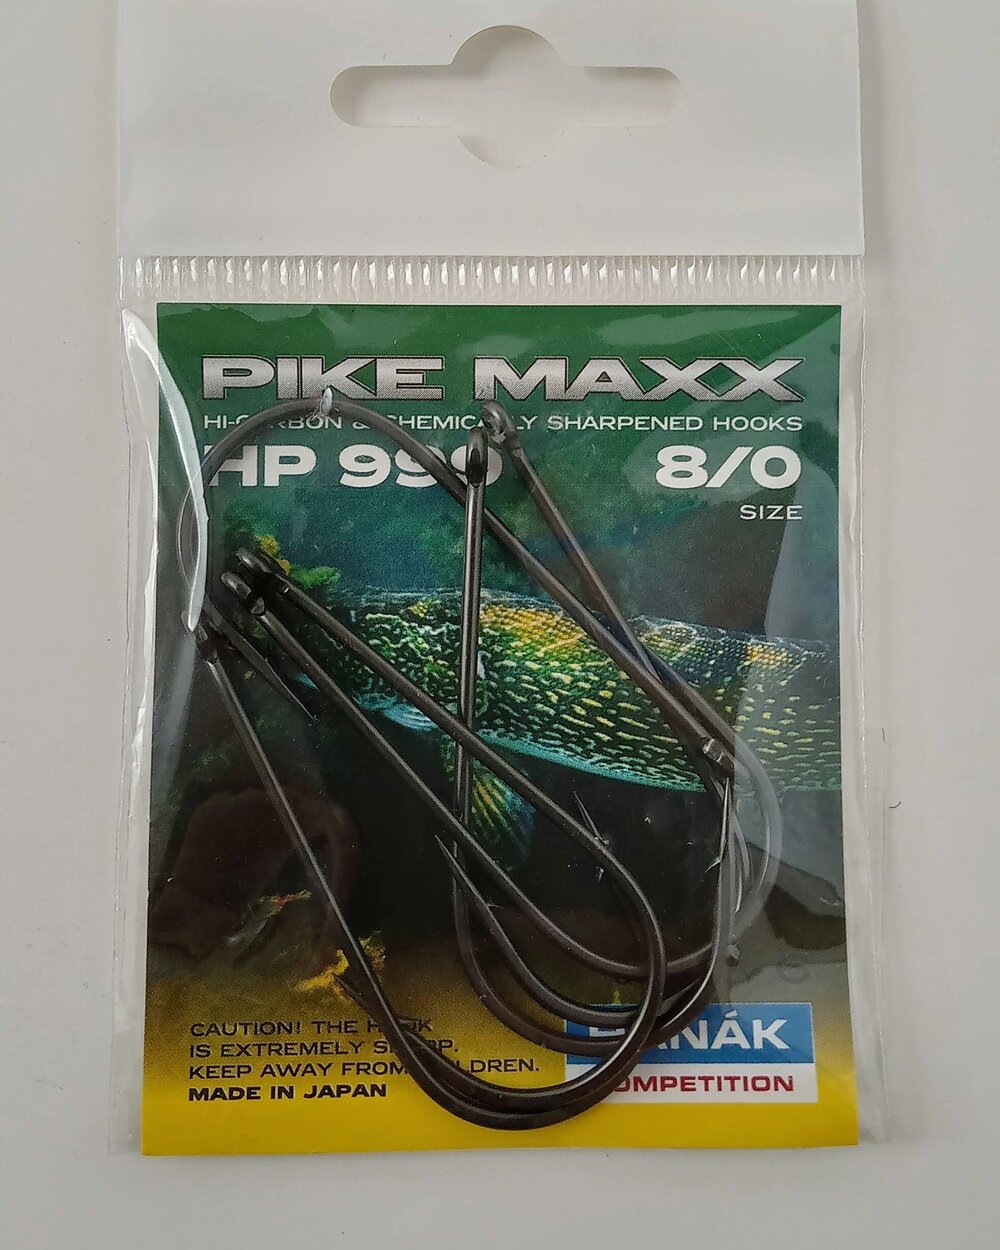 Hanak HP-999 Pike Maxx Hook